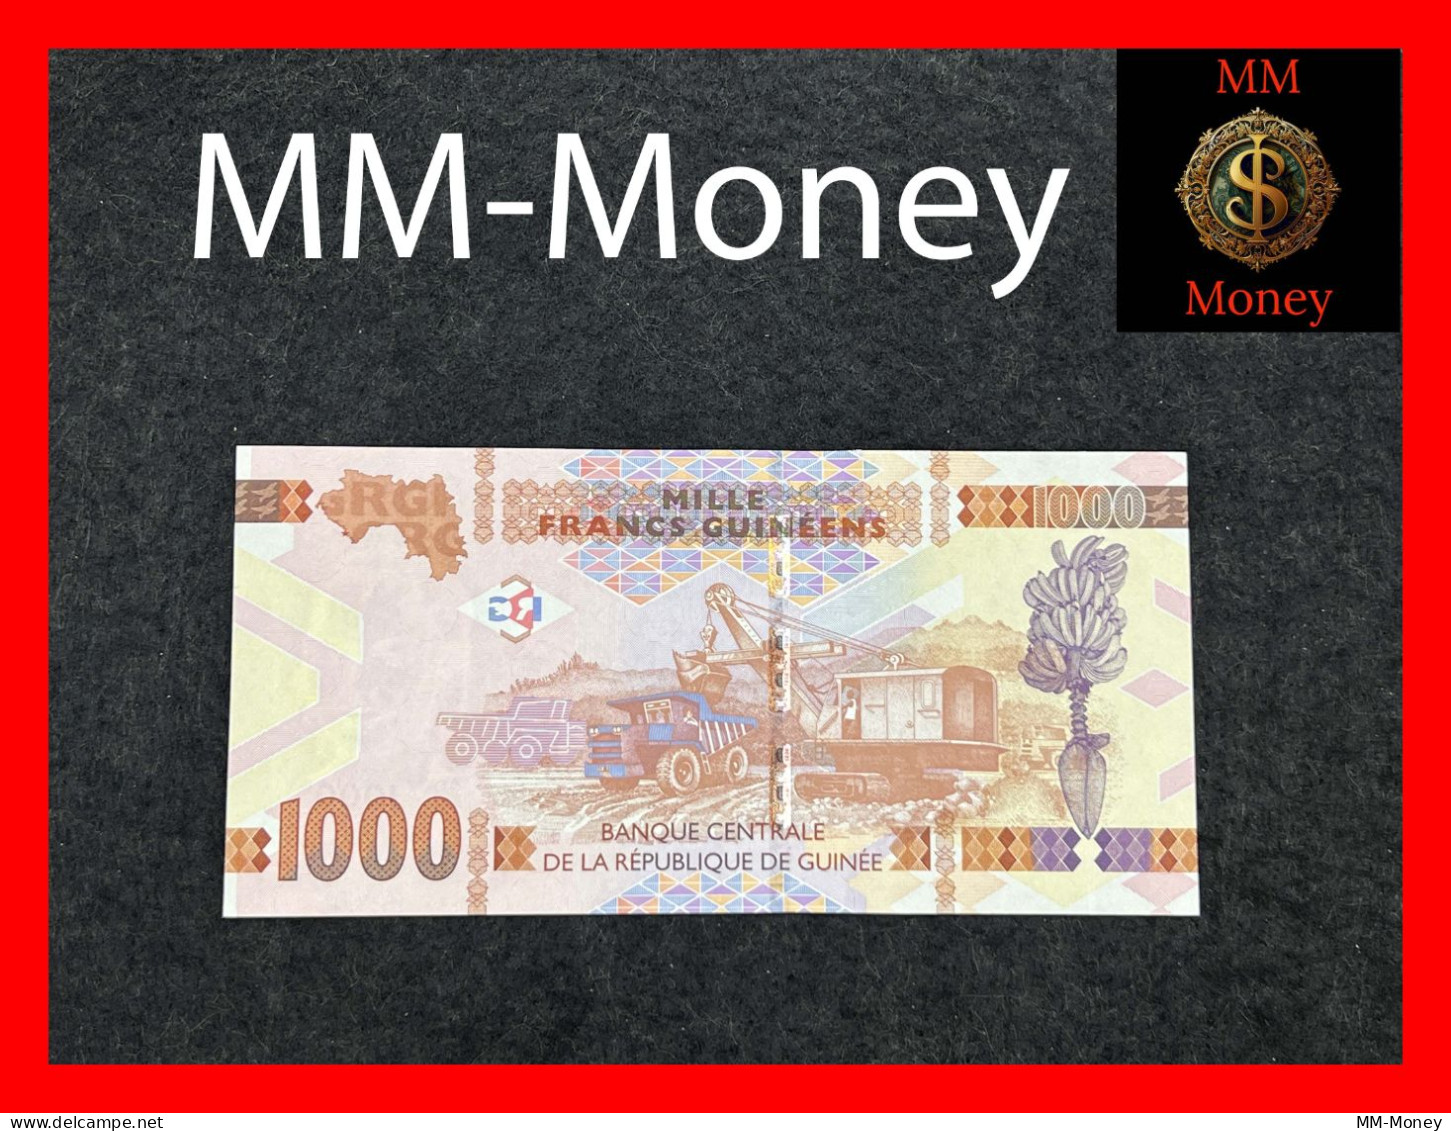 GUINEA 1000 Francs Guinéens 2015  P. 48  **BZ  Replacement**  UNC - Guinee